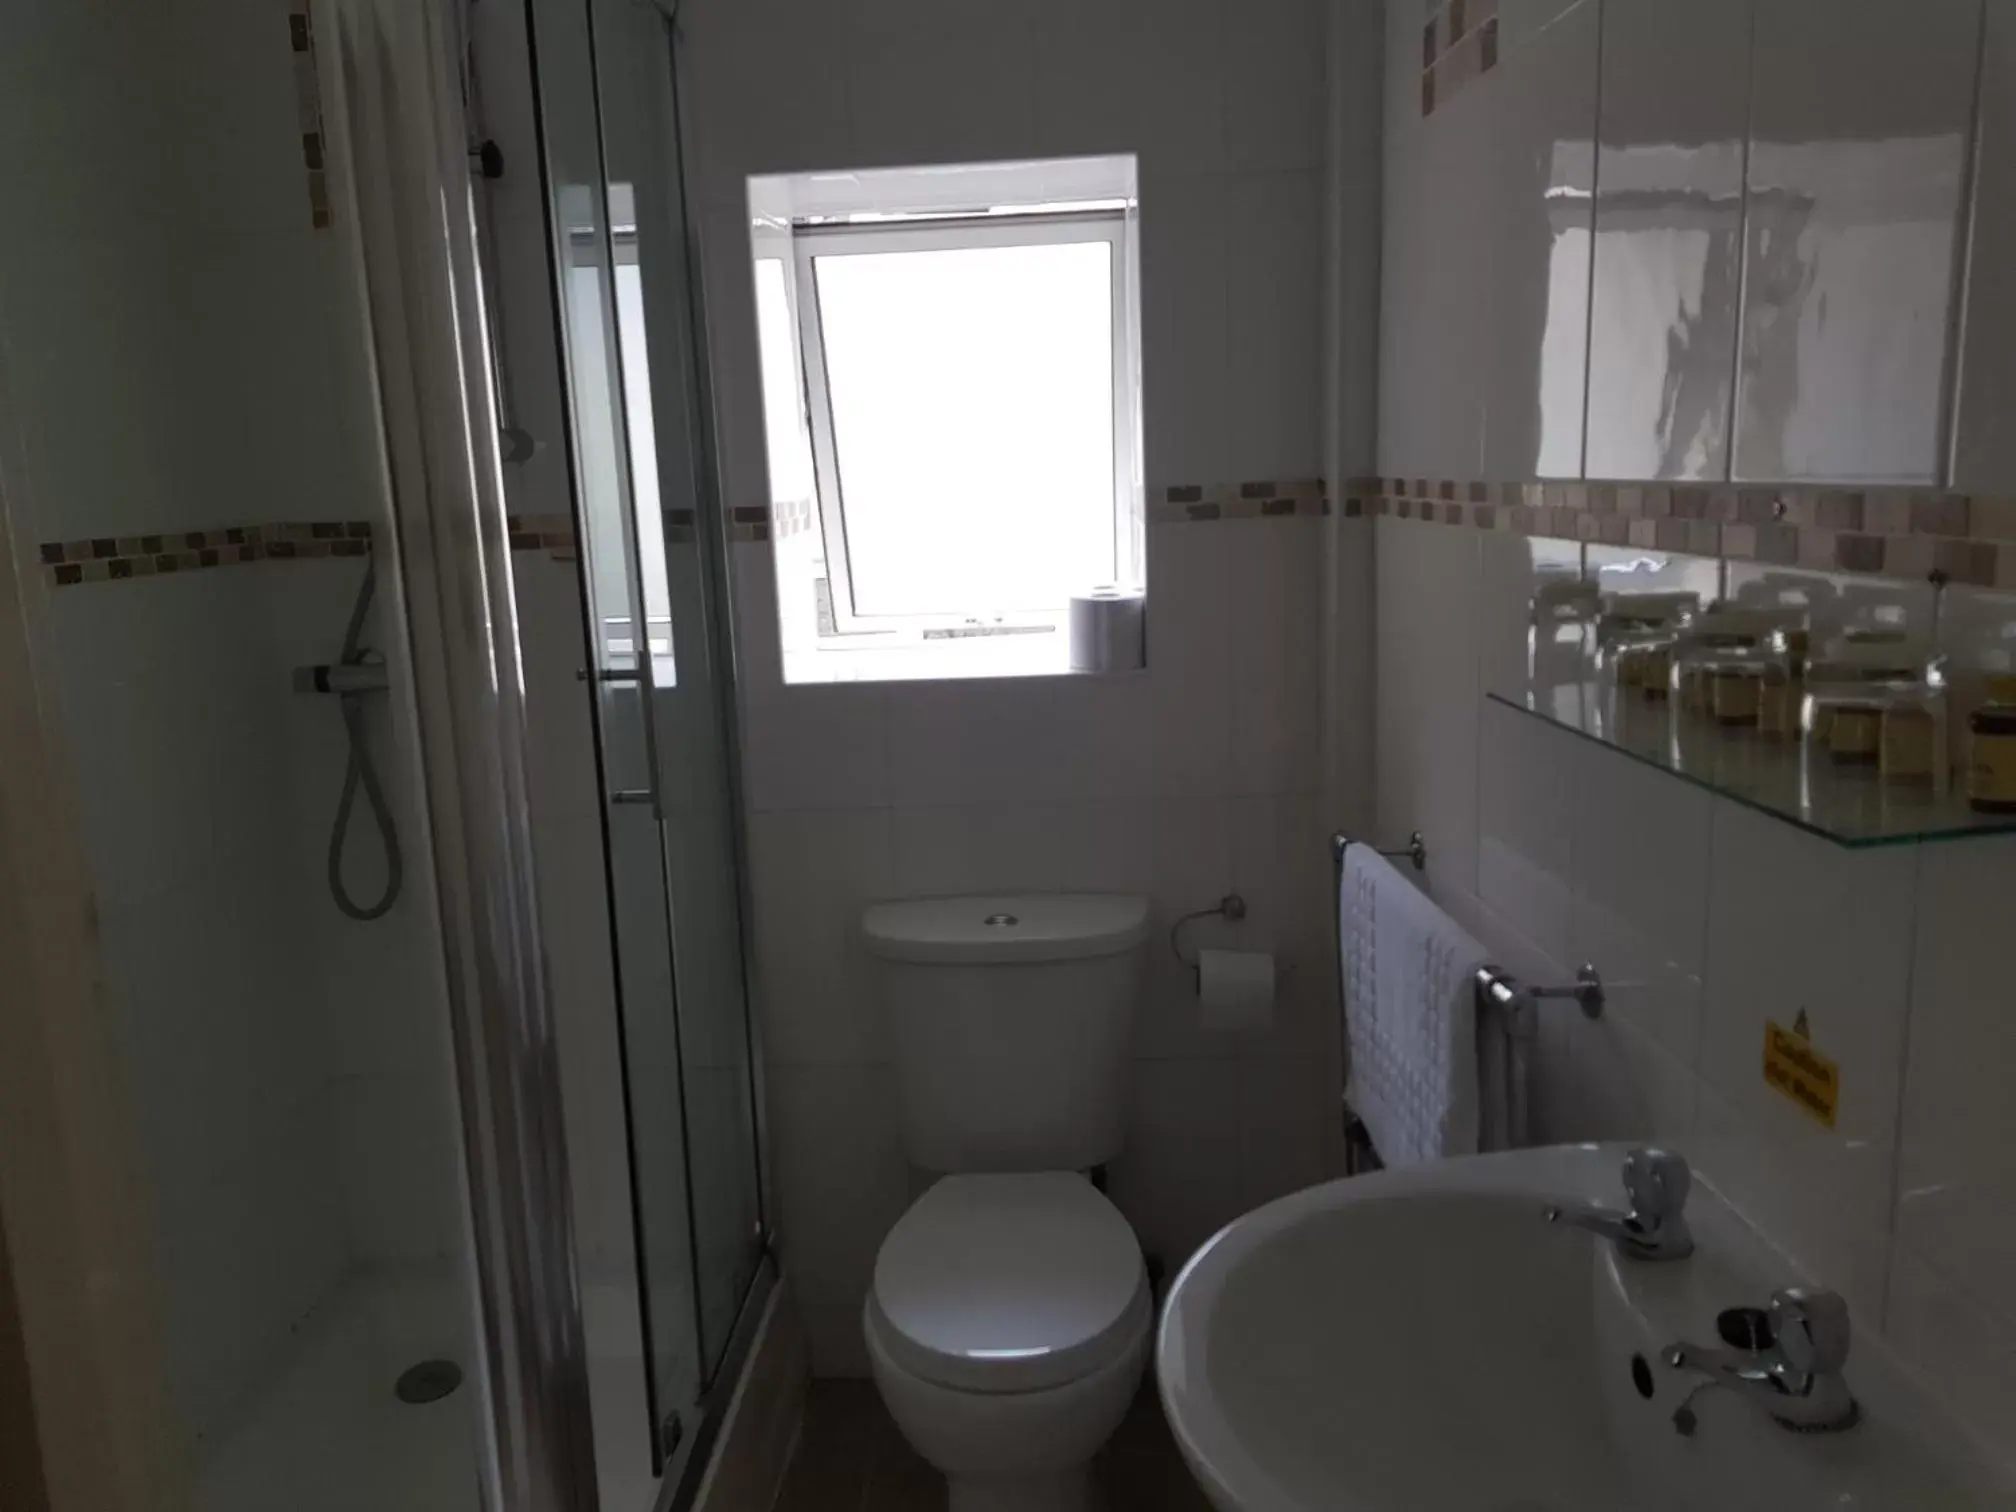 Bathroom in Glan Aber Hotel